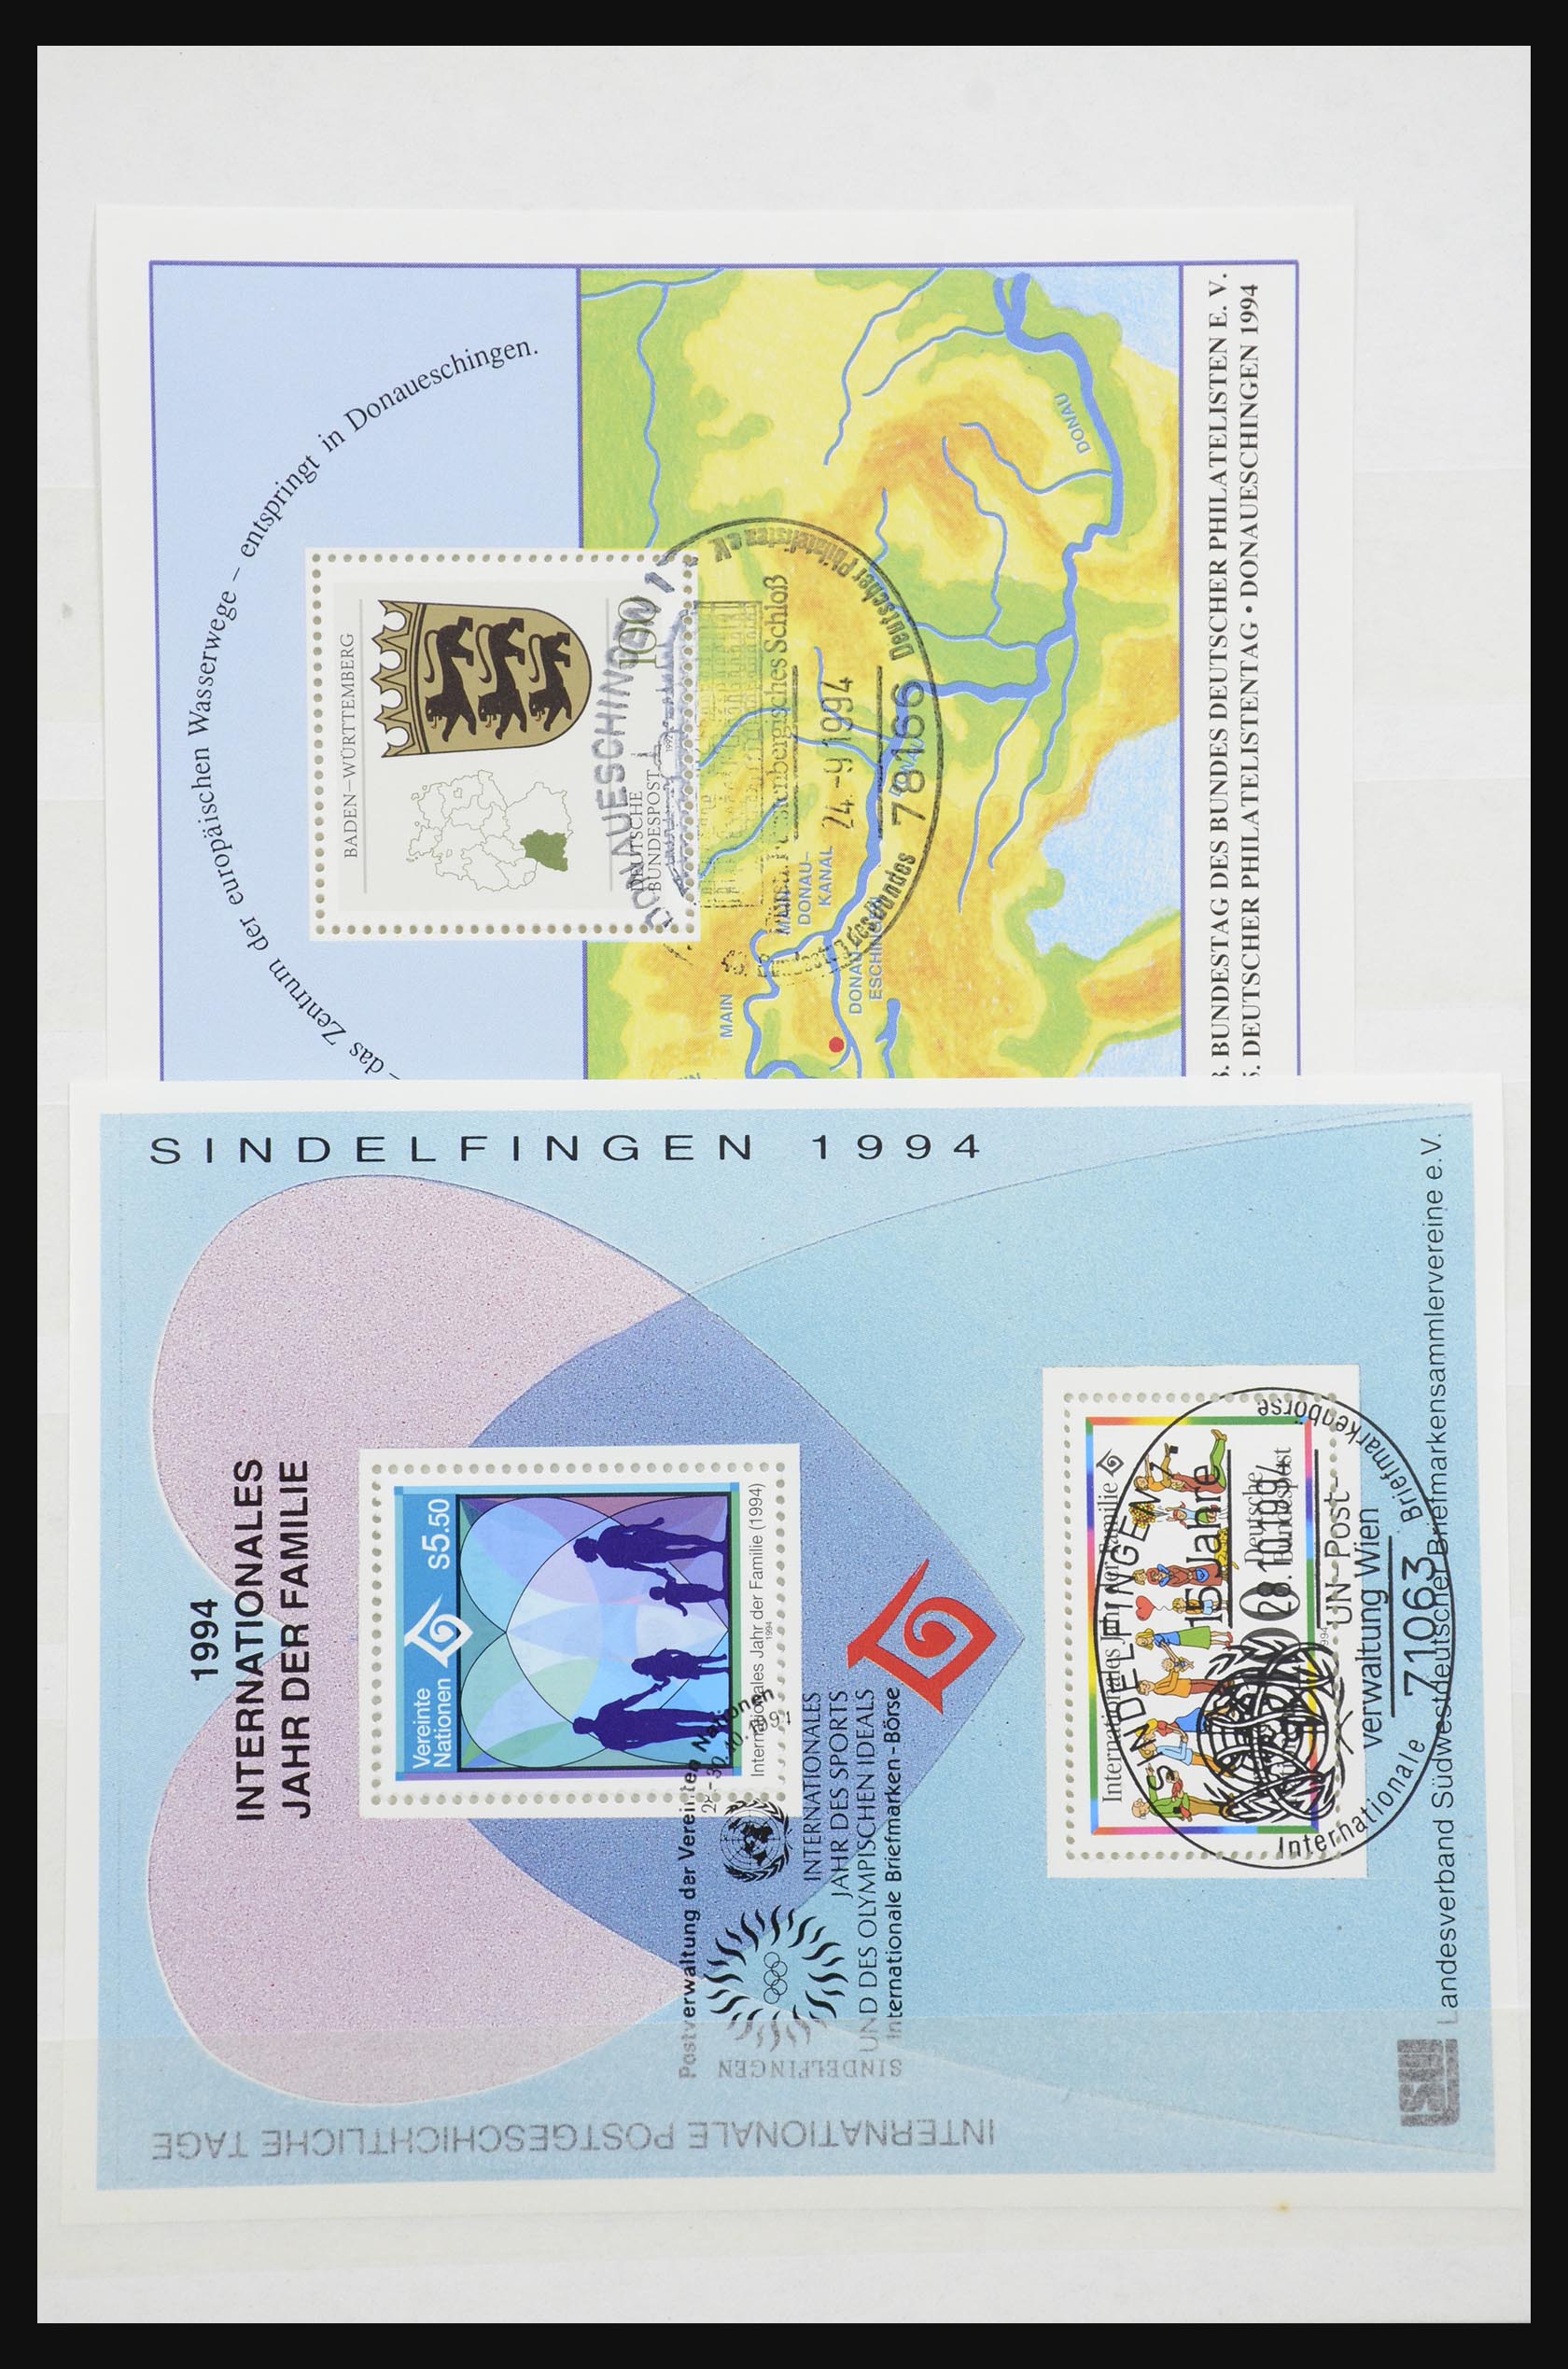 32050 038 - 32050 Bundespost speciale blokken 1980-2010.